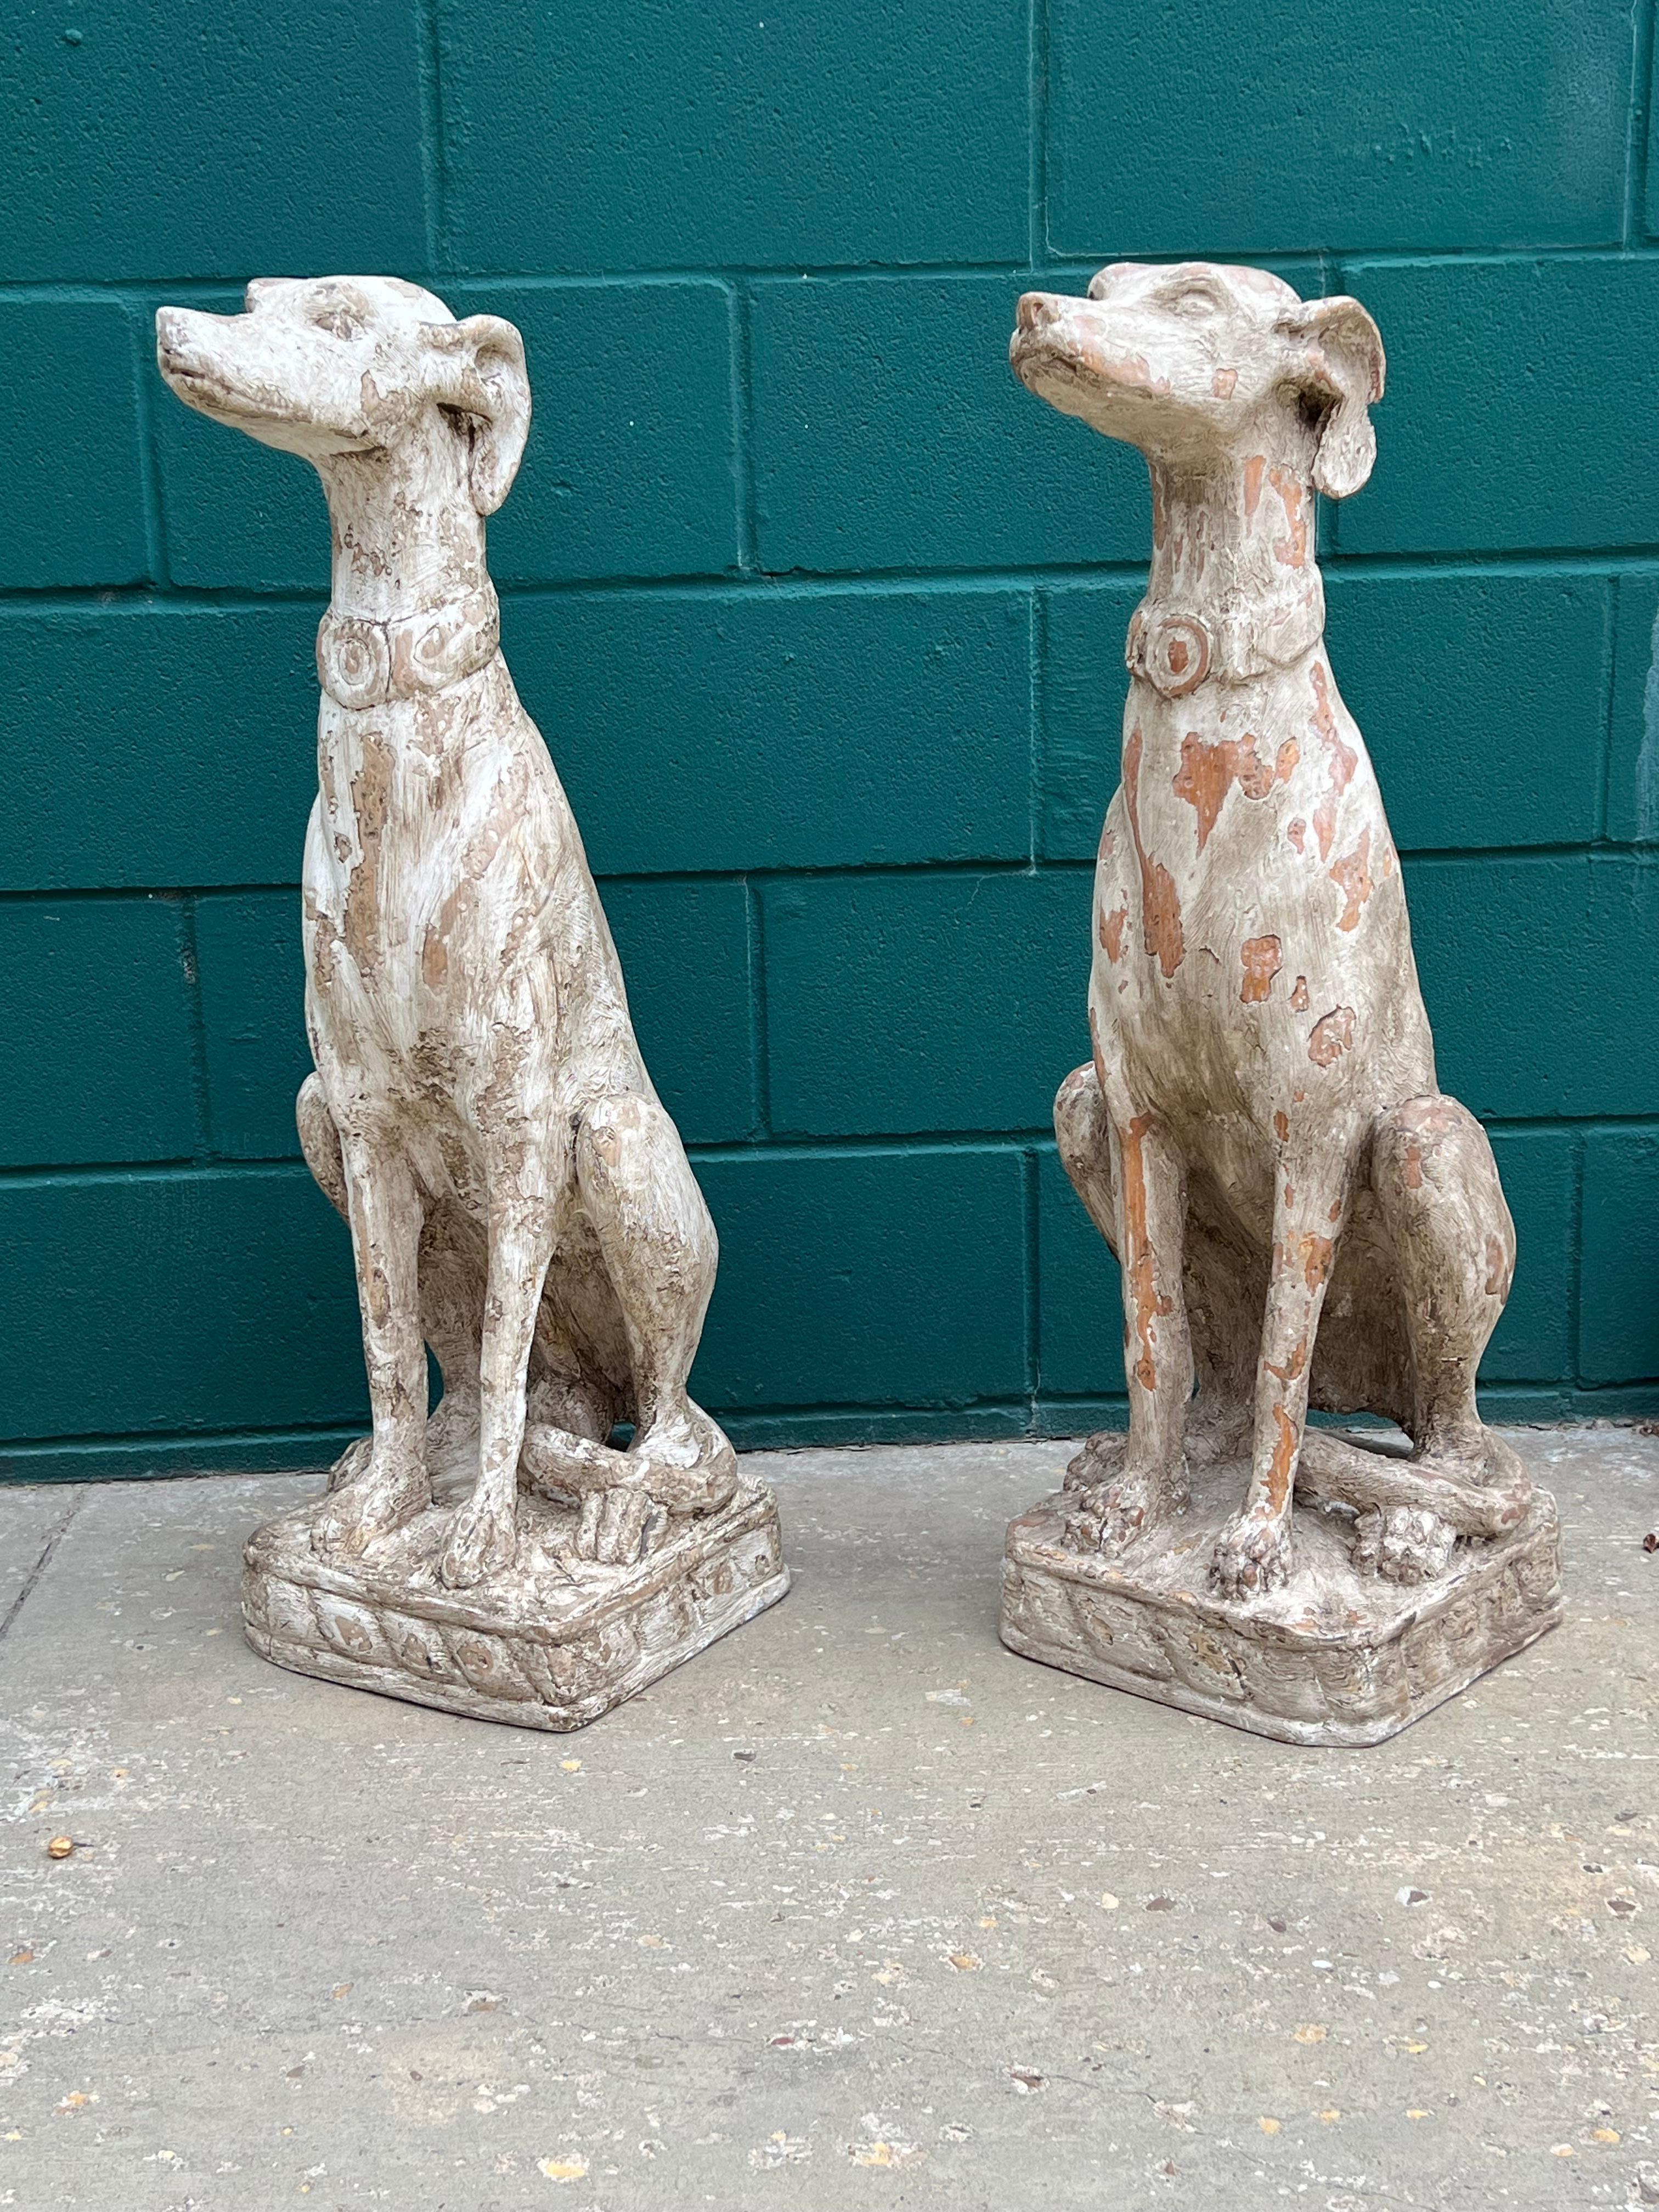 Dieses Paar handgeschnitzter hölzerner Windhunde ist über 33 Zoll groß,  wurde in Italien hergestellt.  Sie werden auf ihren Hüften sitzend dargestellt, mit ihrem charakteristischen langen, schlanken Schwanz, der um ein Hinterbein geschlungen ist. 